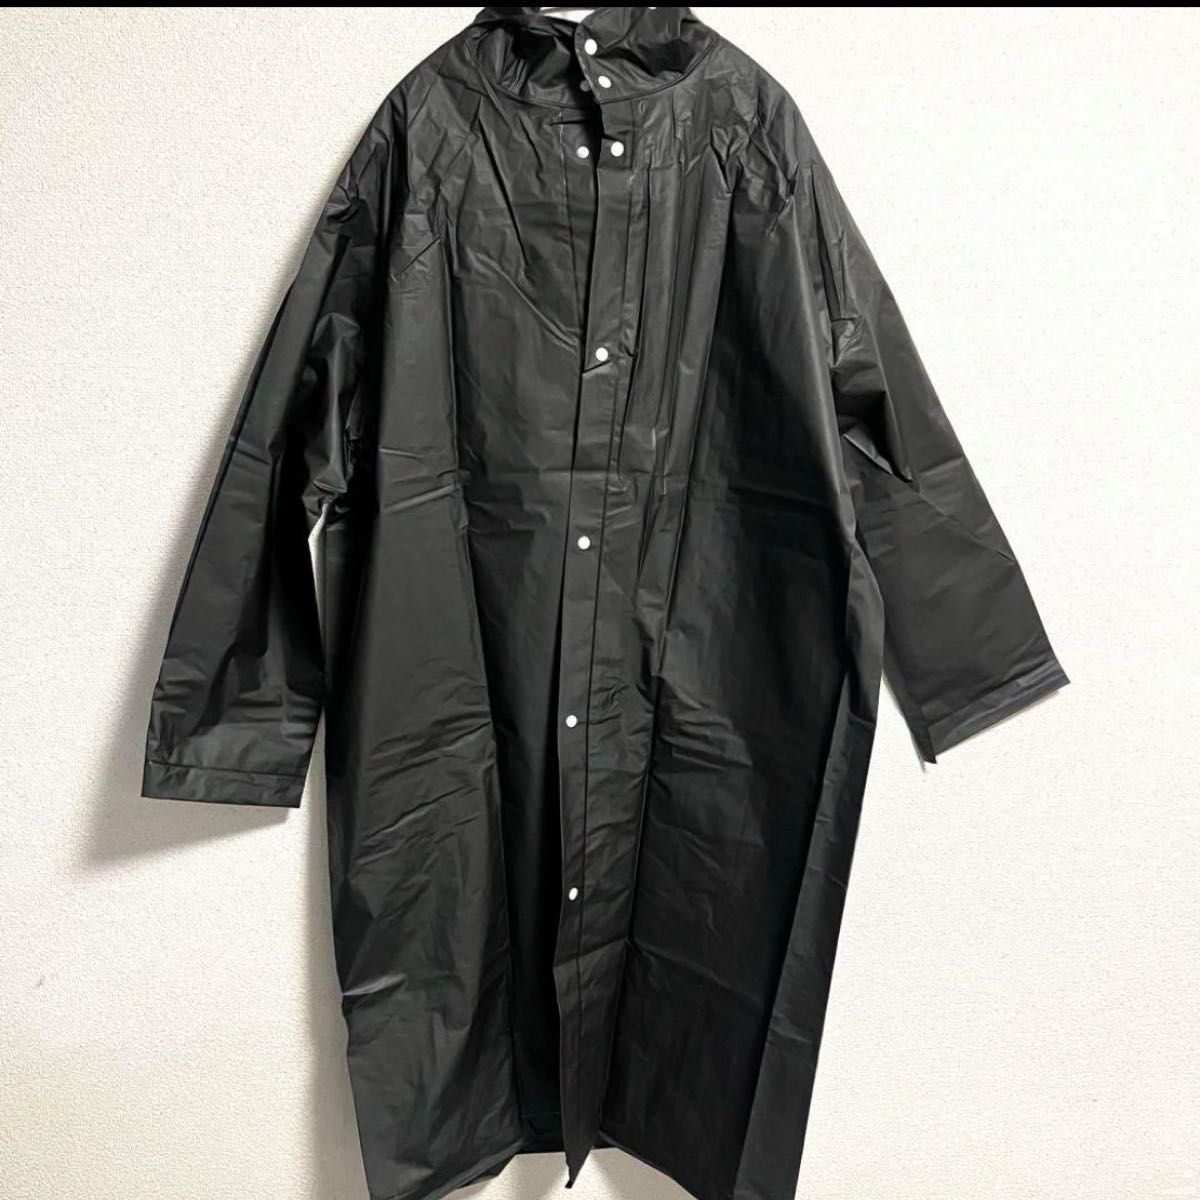 レインコート XL ロング丈 カッパ 雨具 防水 通学 前開き 男女兼用